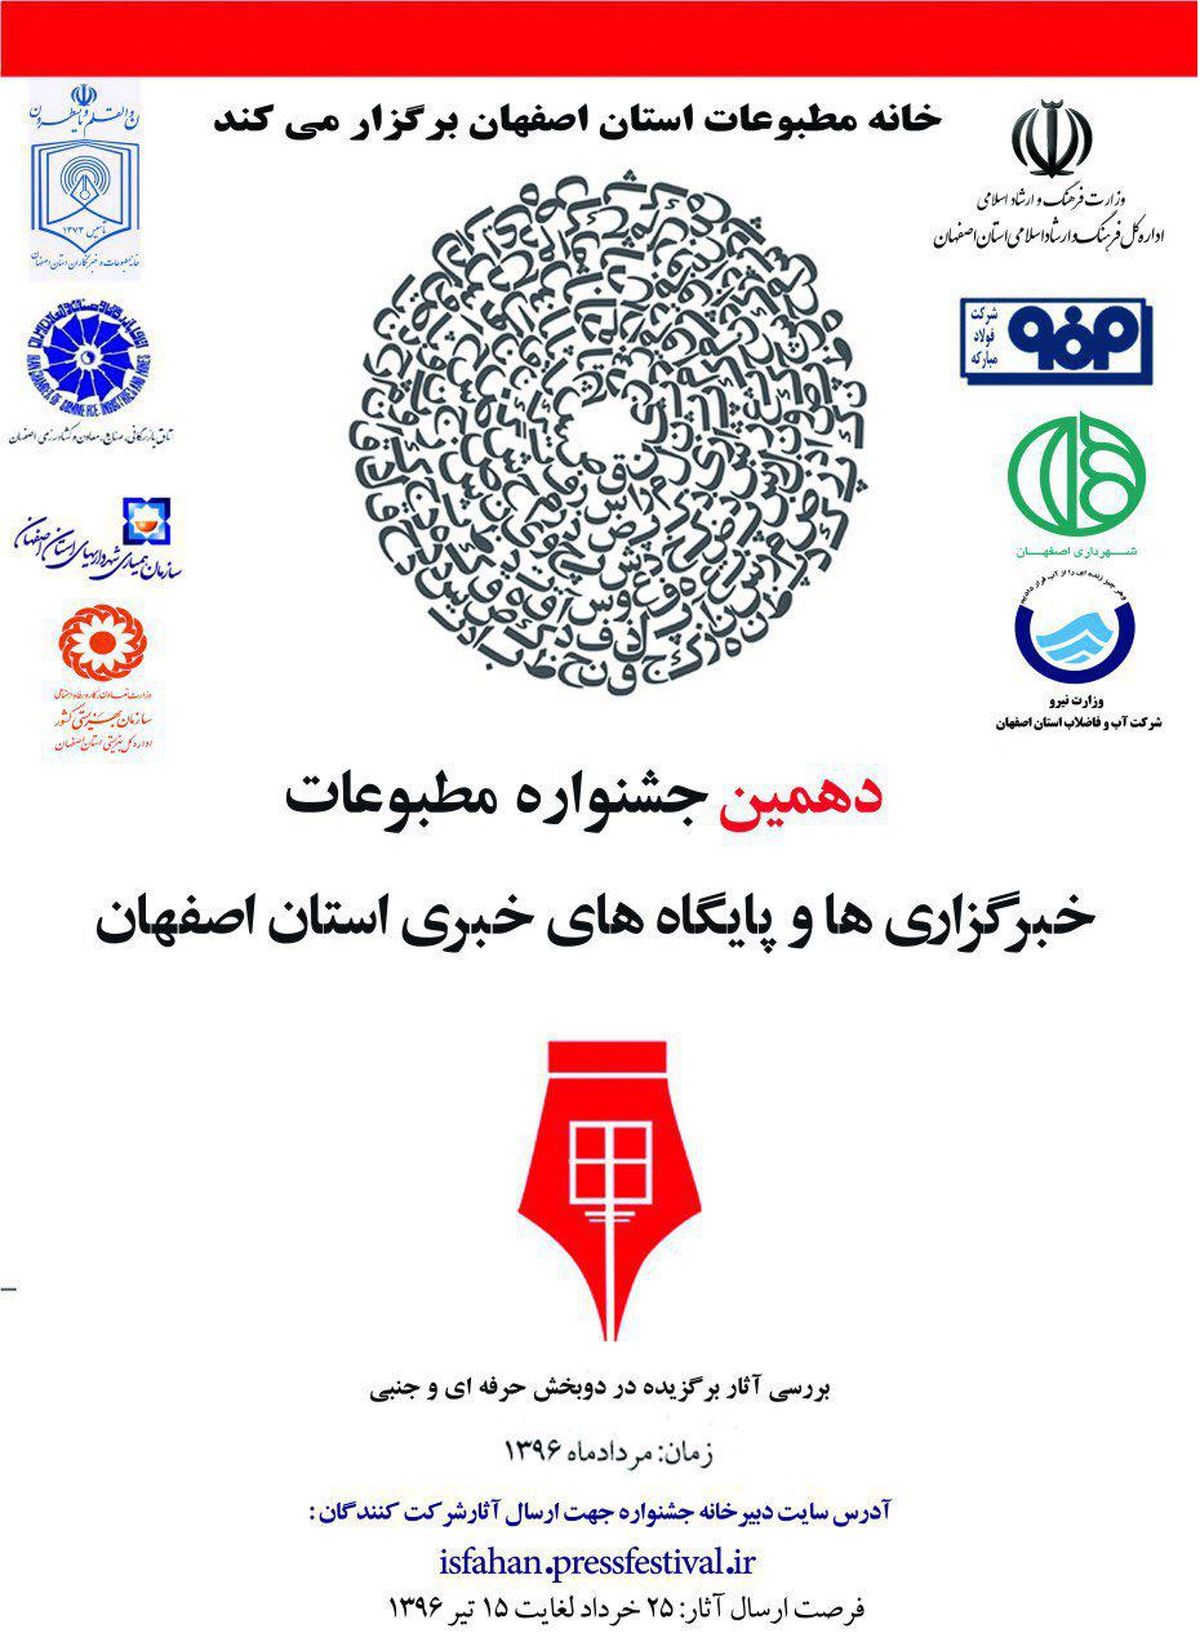 فراخوان دهمین جشنواره مطبوعات و رسانه های الکترونیک استان اصفهان